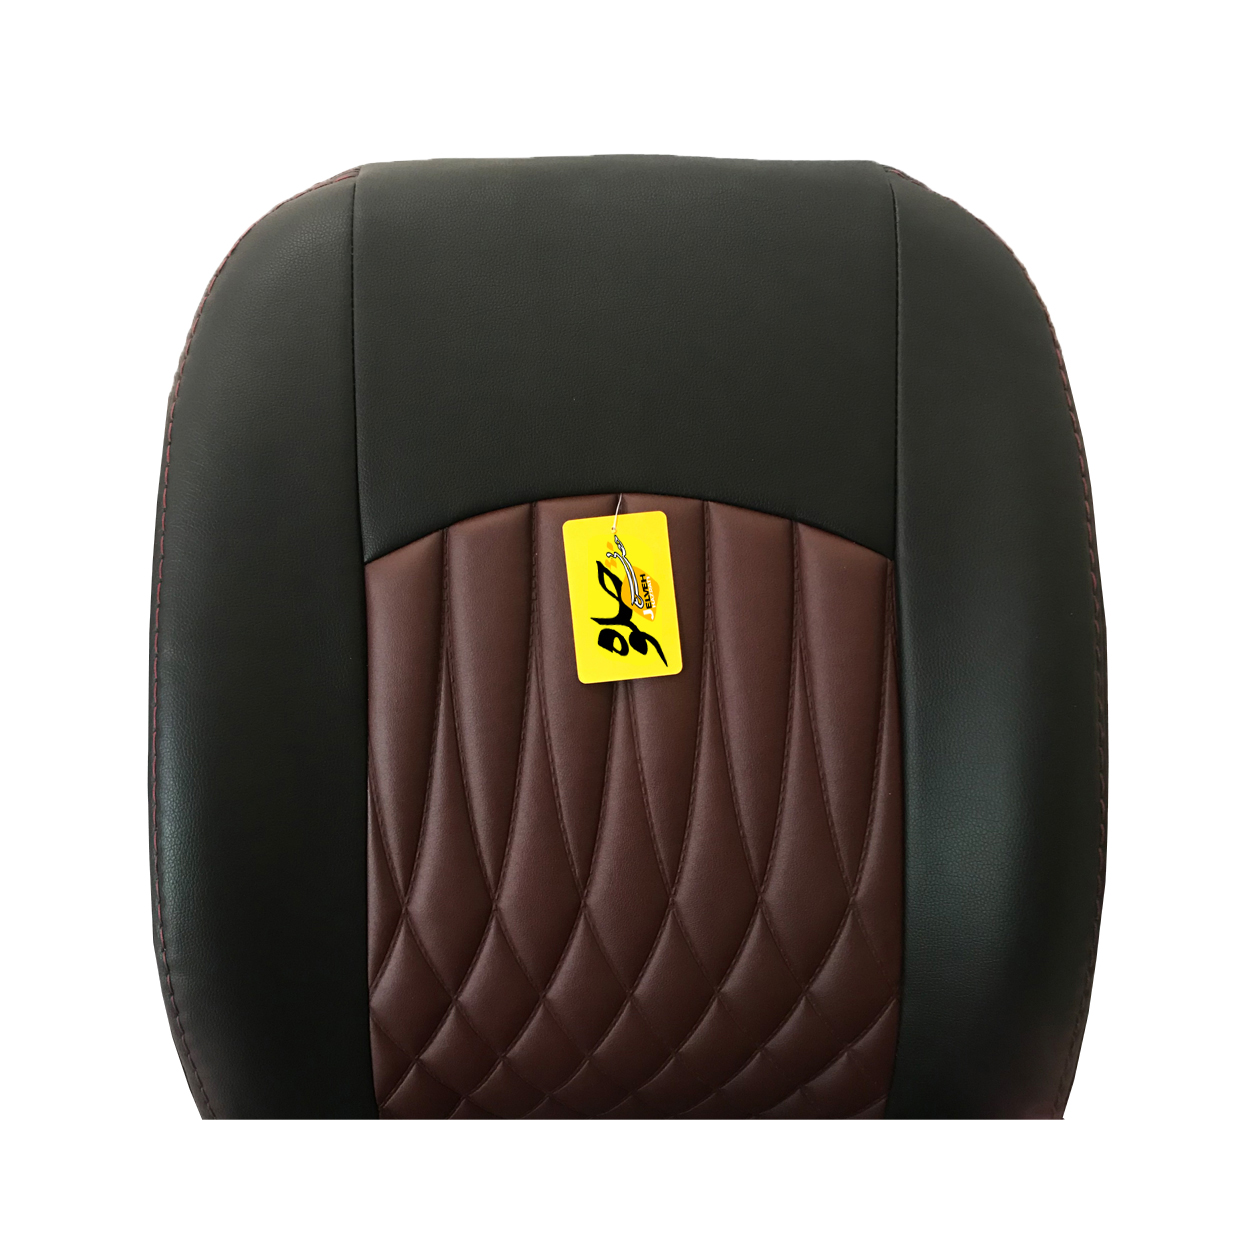 روکش صندلی خودرو جلوه مدل bg20614 مناسب برای رانا